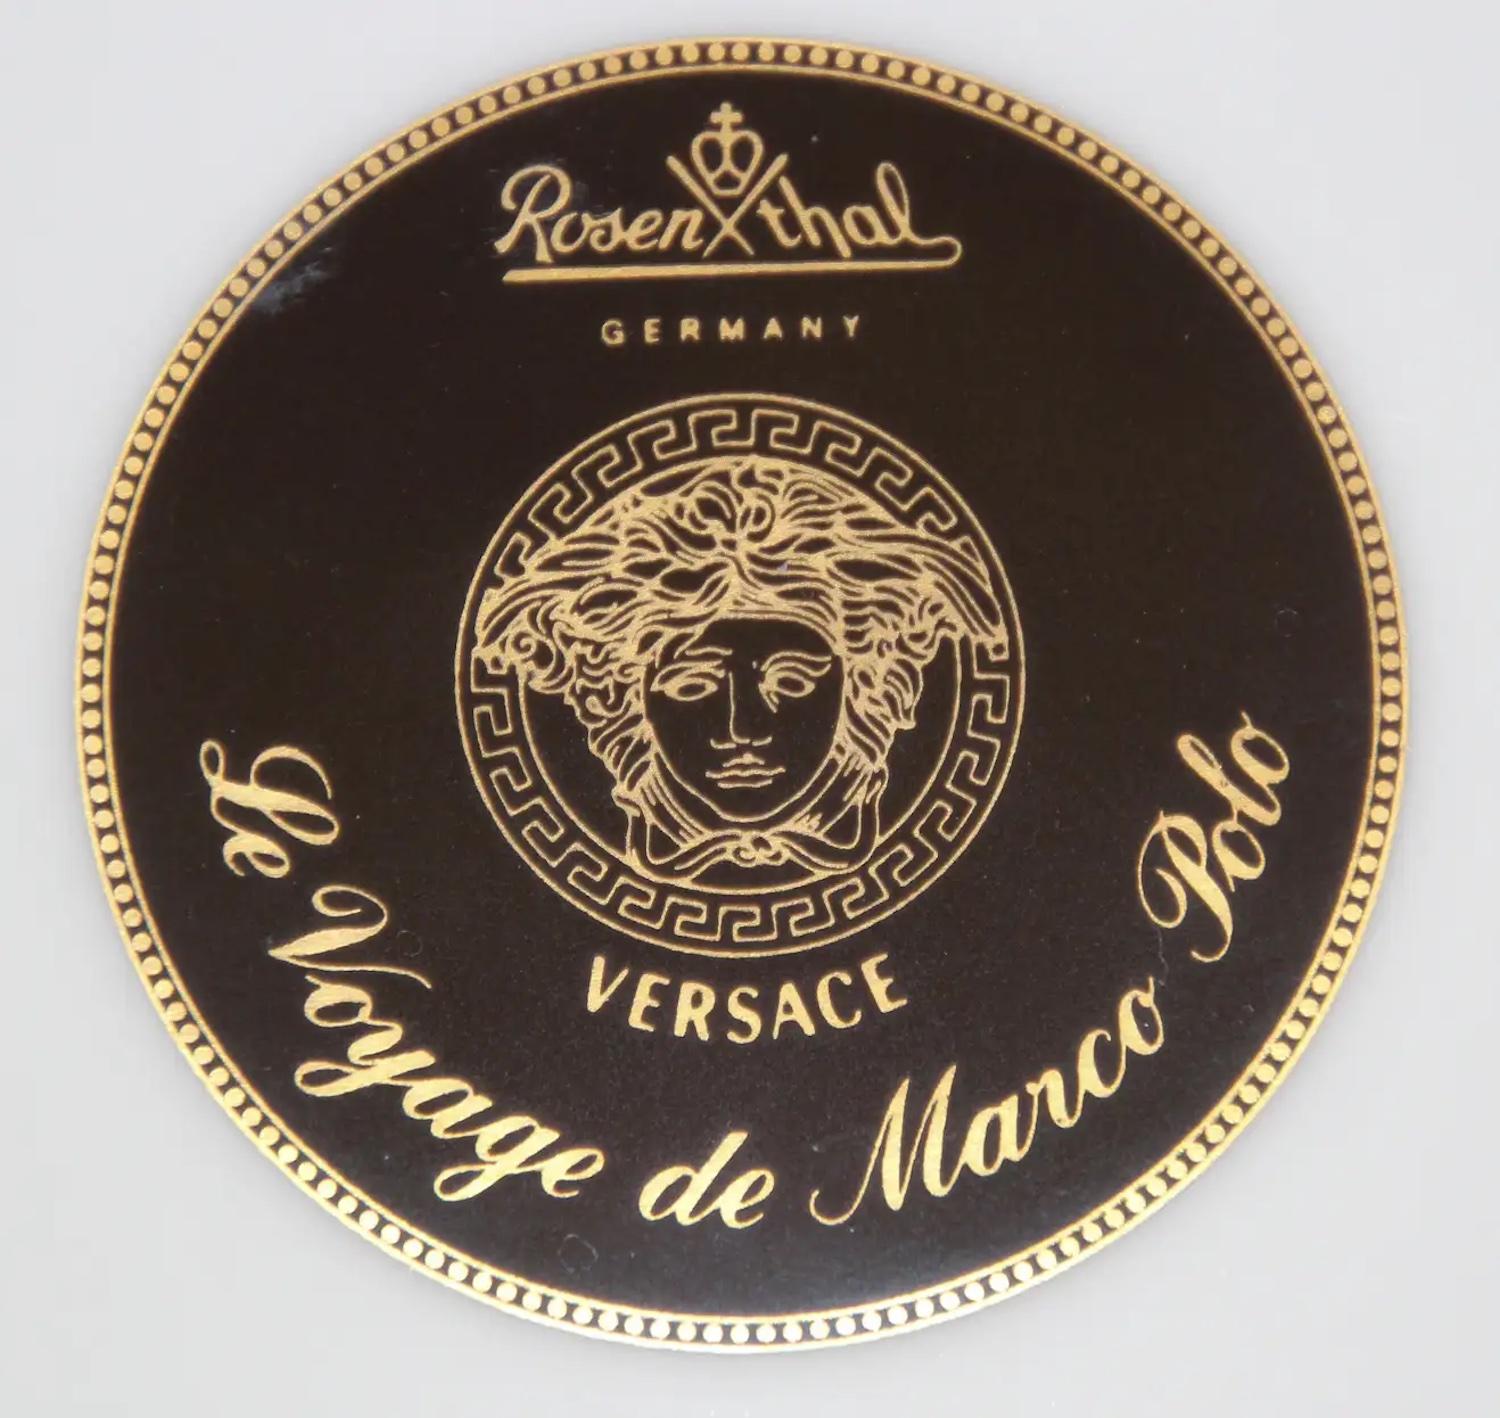 Für Rosenthal: „Le Voyage de Marco Polo“ von Gianni Versace im Angebot 9